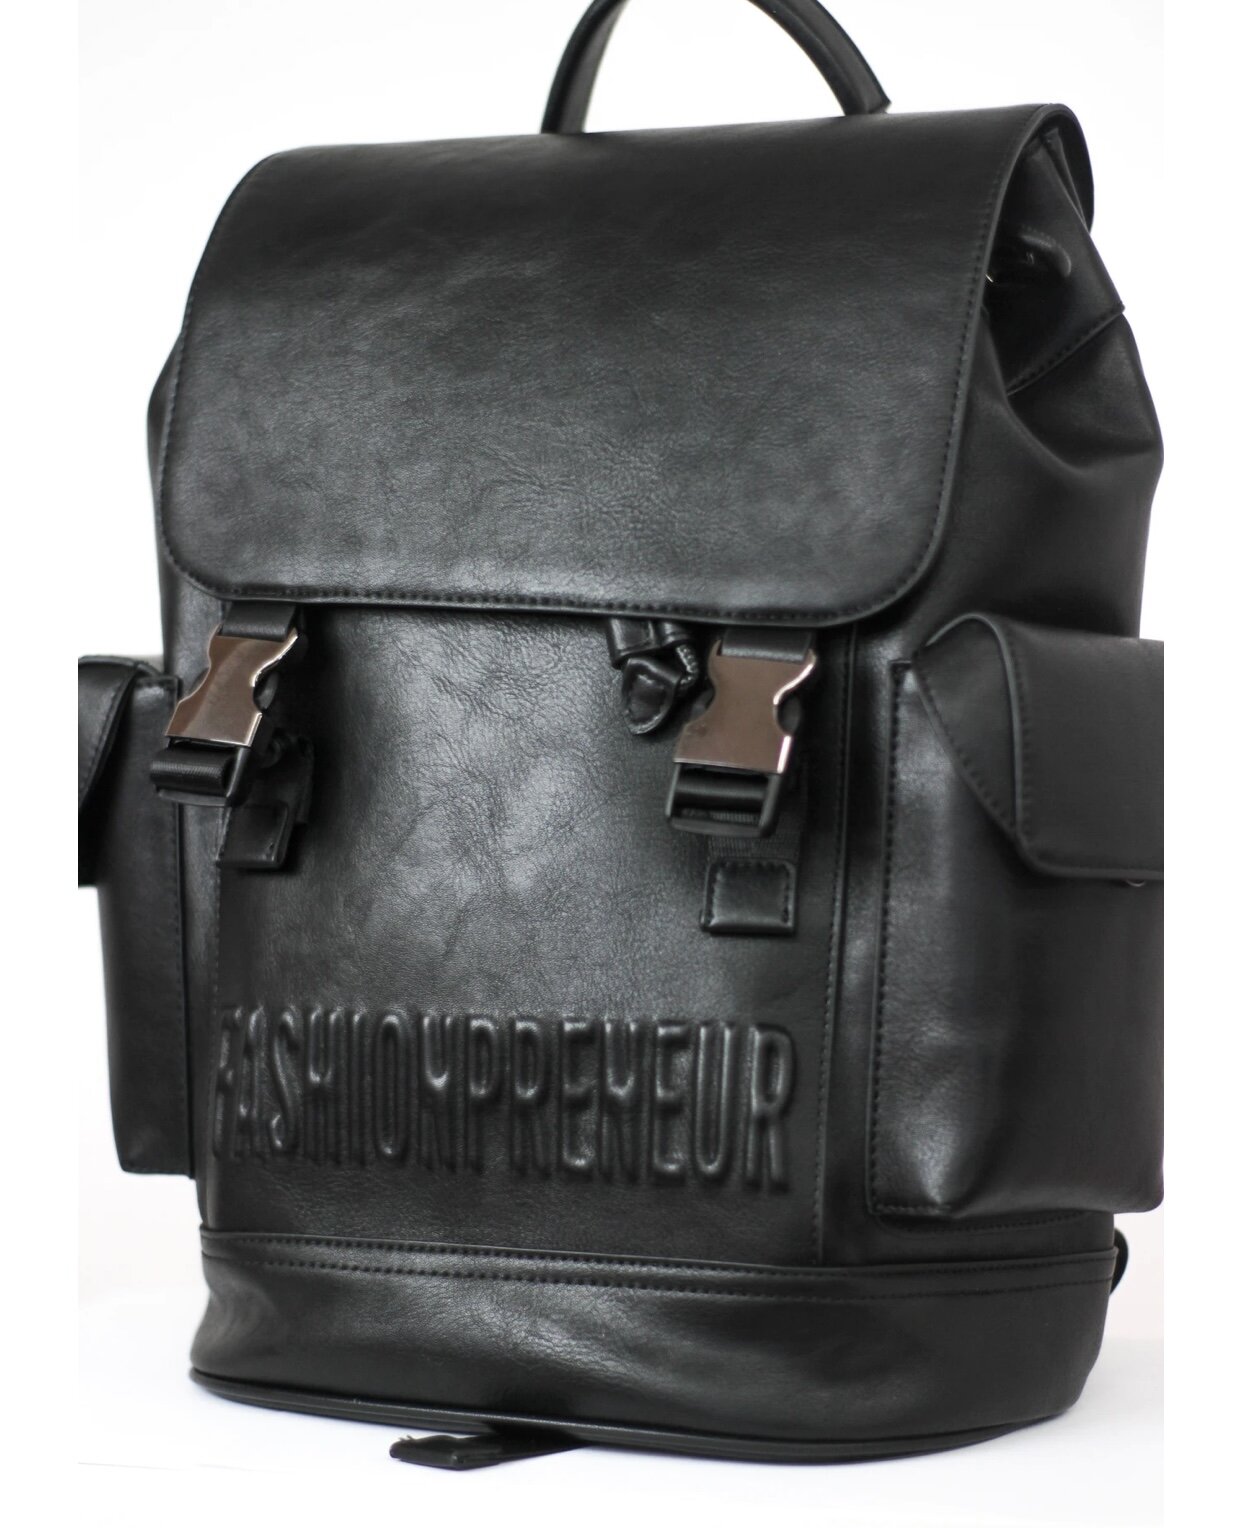   The Fashionpreneur Backpack  - $199 